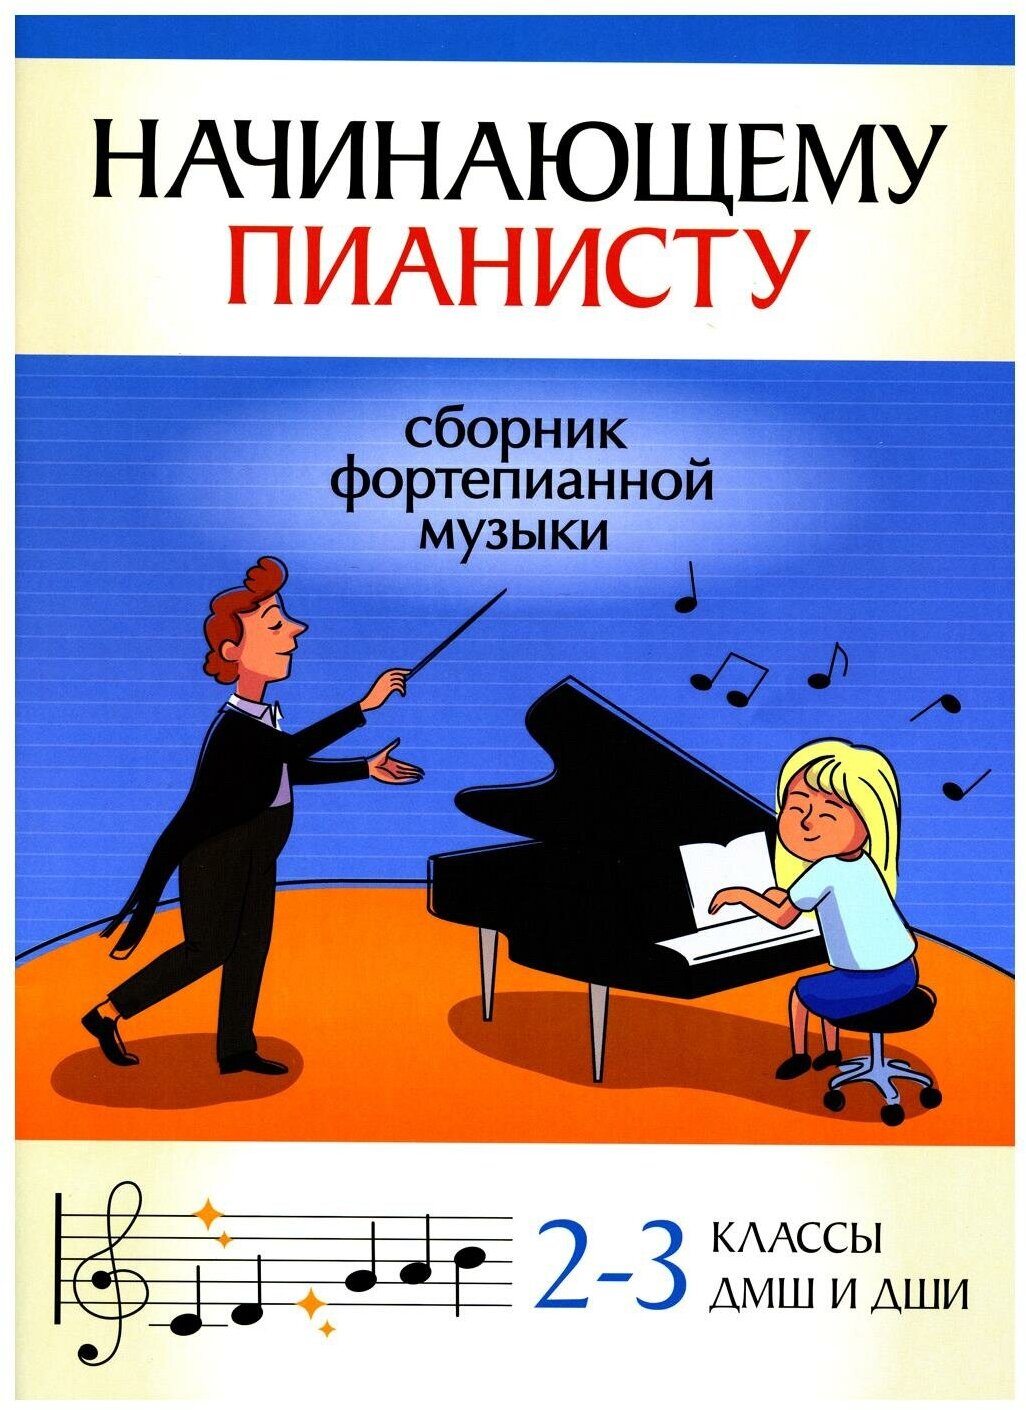 Начинающему пианисту. 2-3 классы ДМШ и ДШИ: сборник фортепианной музыки. Феникс